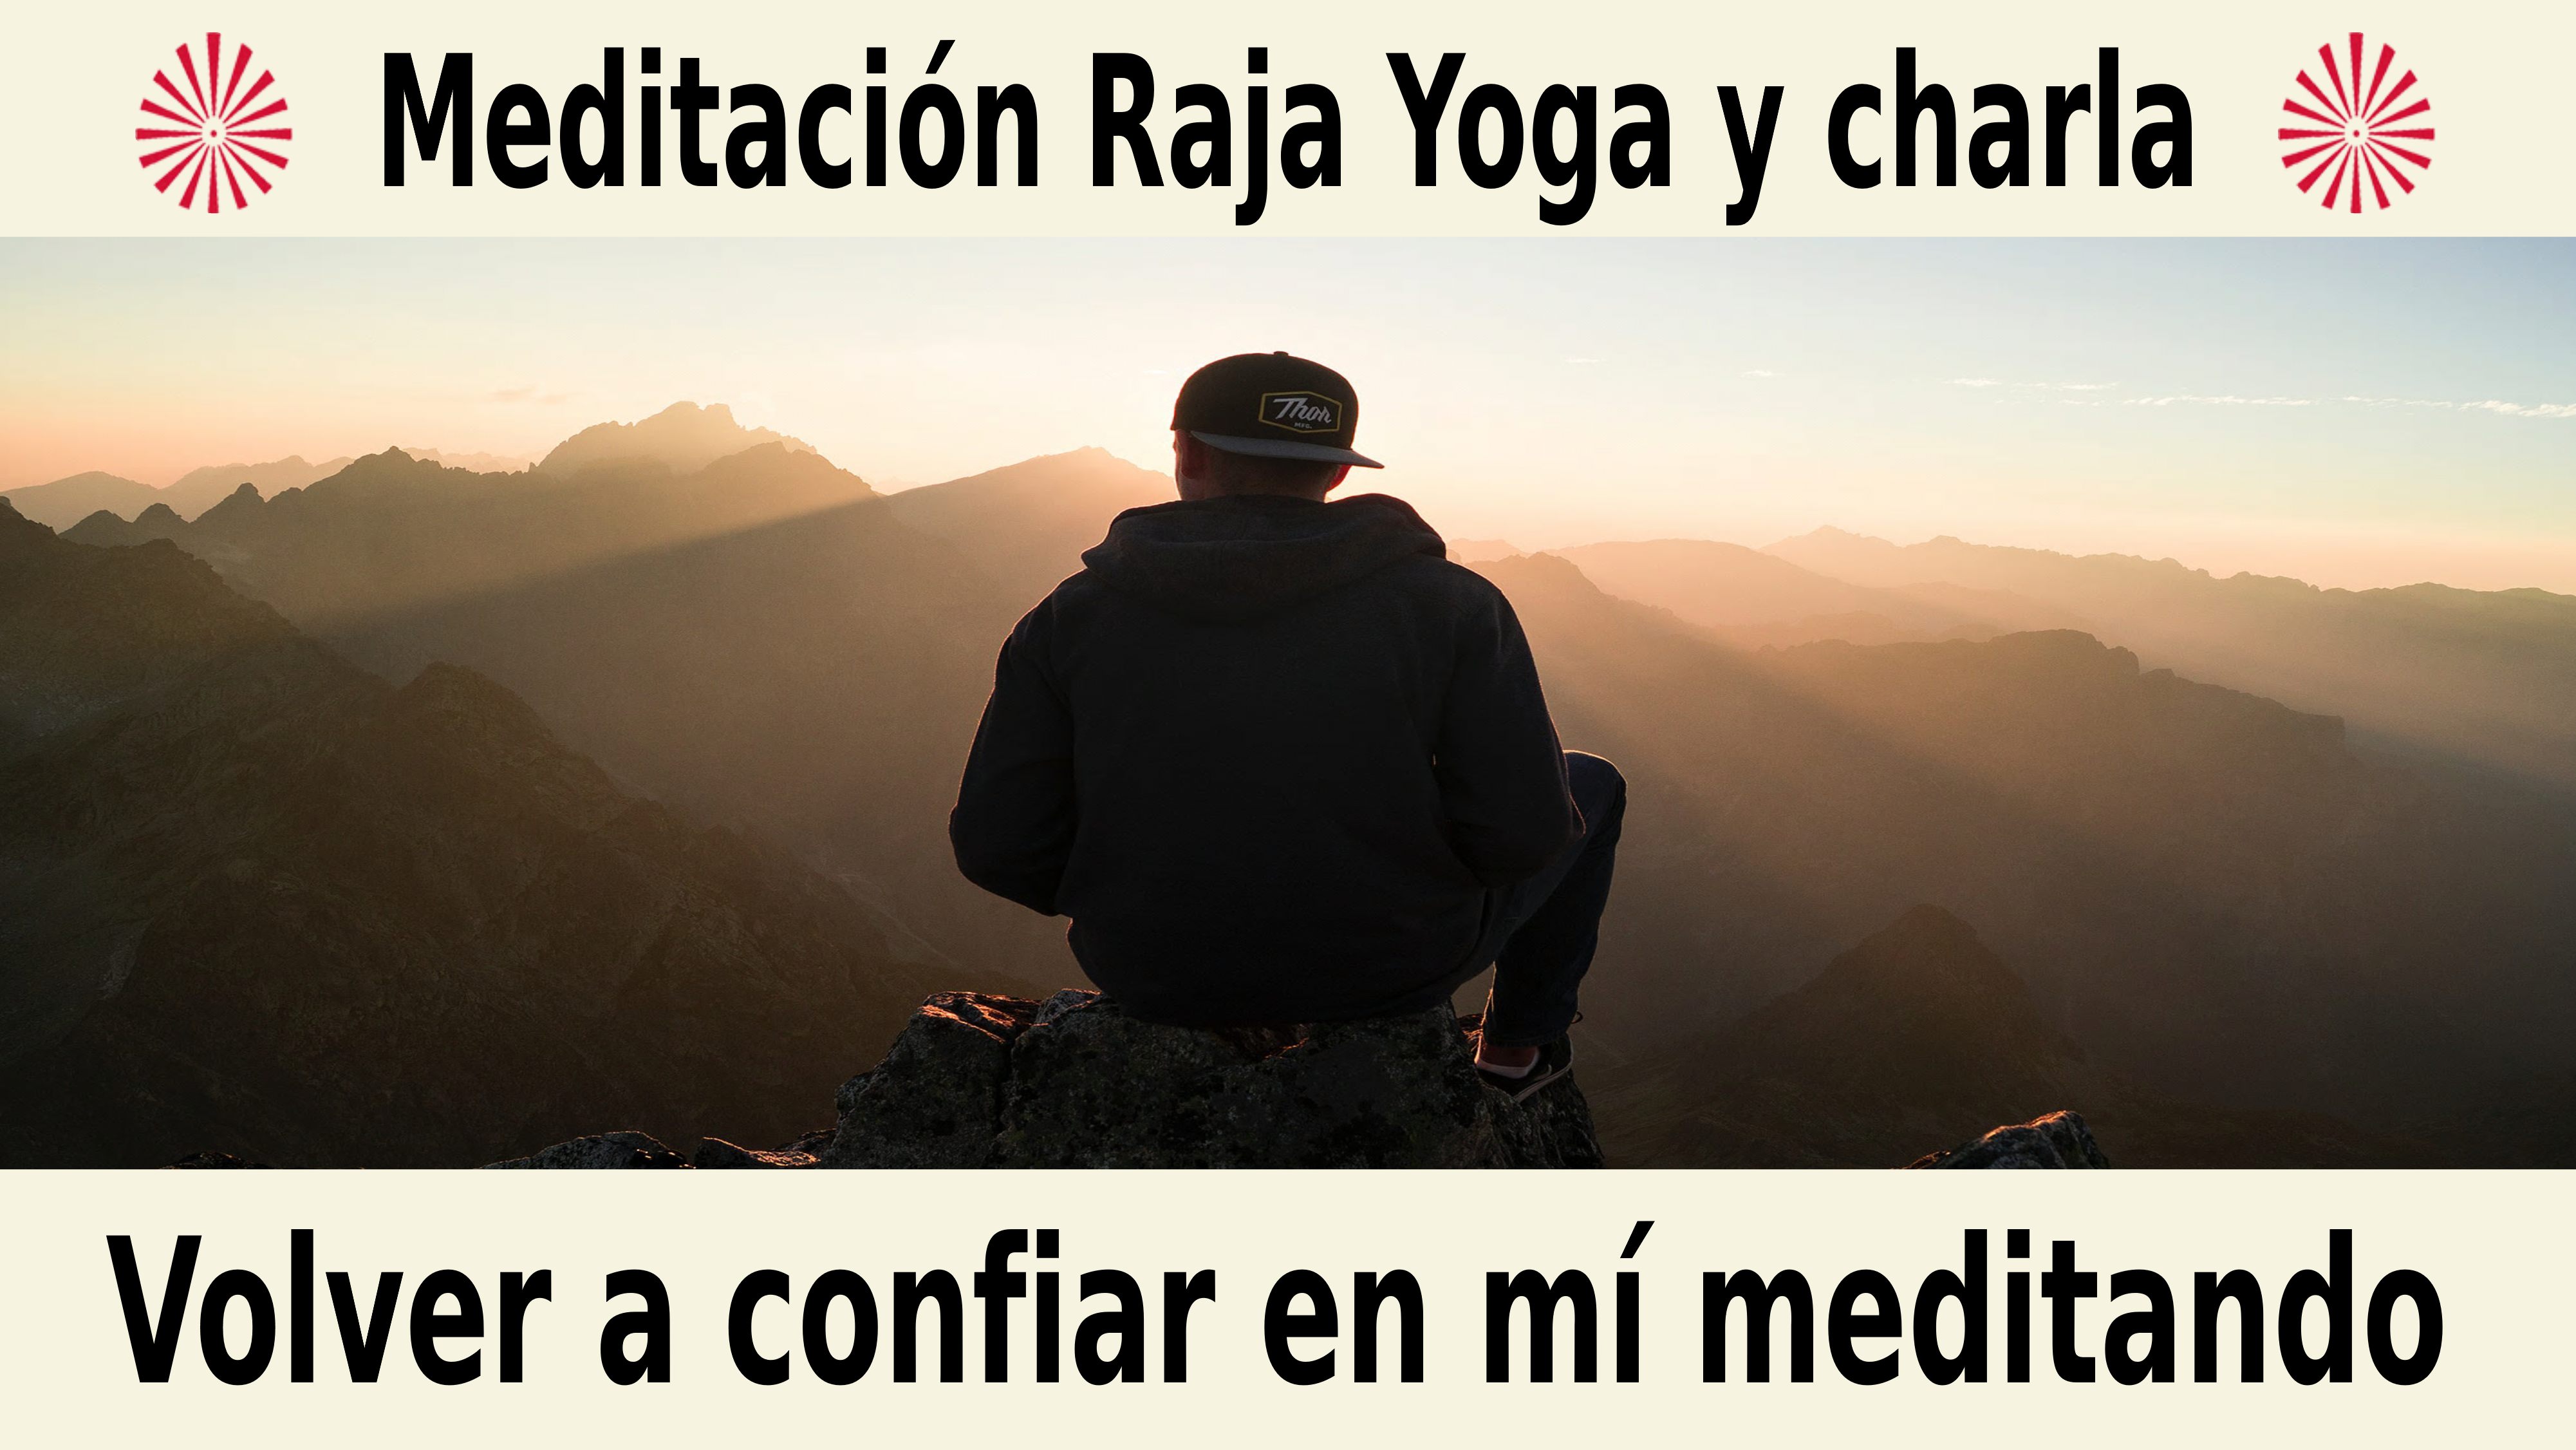 Meditación Raja Yoga y charla:  Volver a confiar en mí meditando (23 Diciembre 2020) On-line desde Sevilla